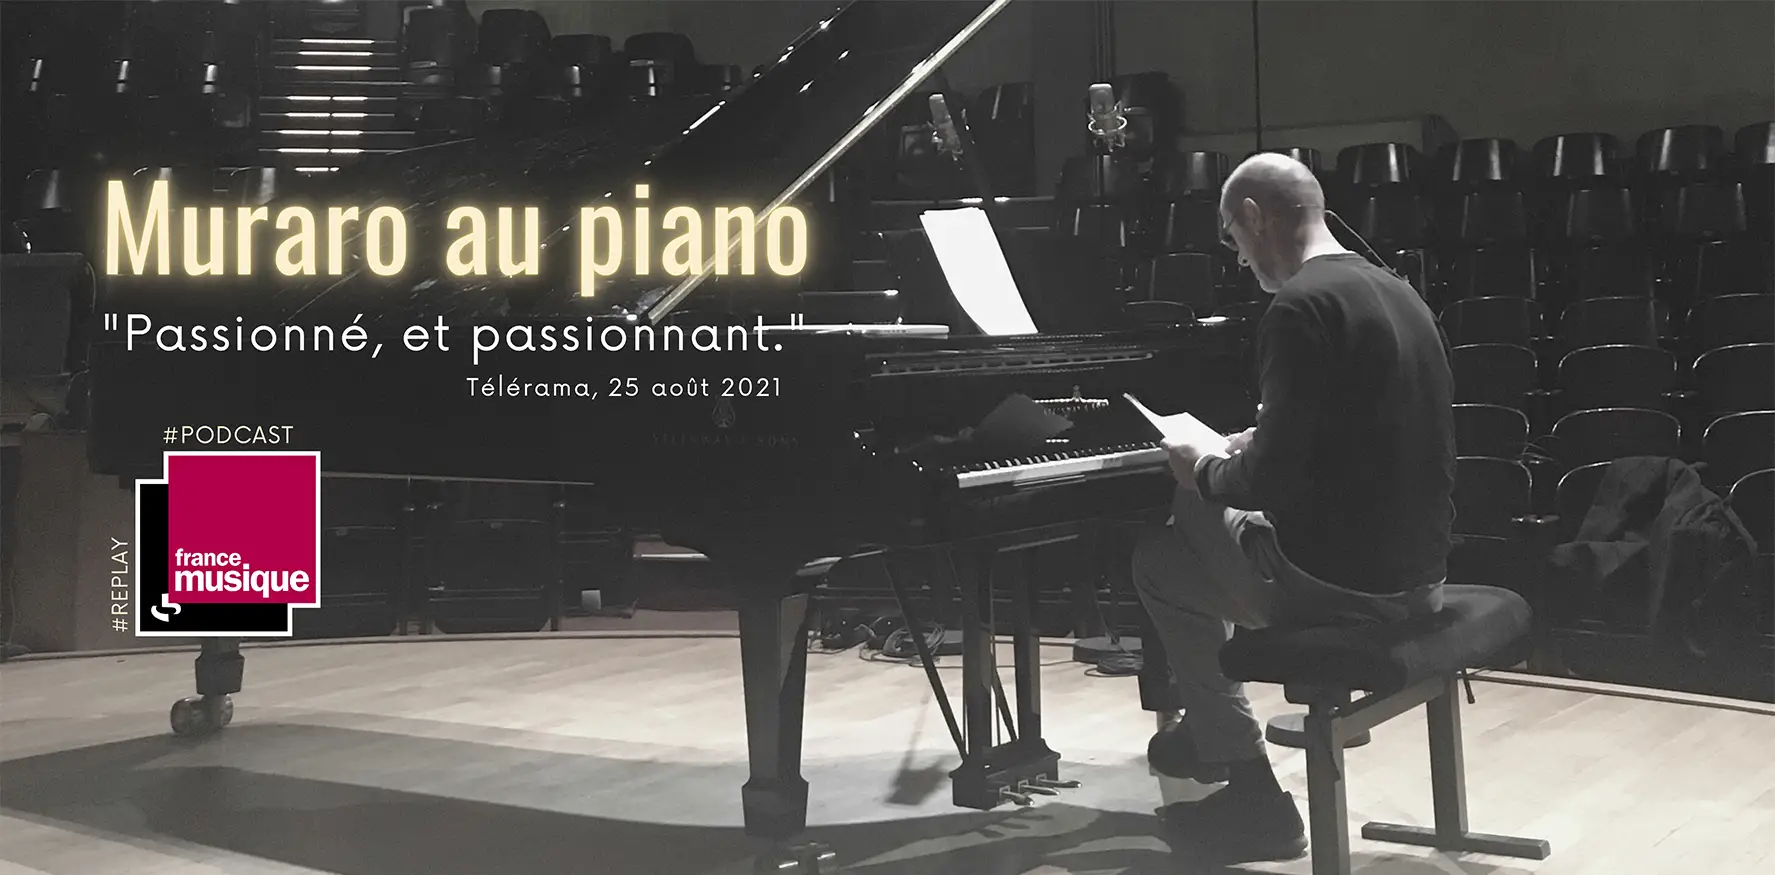 Muraro au piano par Roger Muraro (émission de radio sur francemusique)